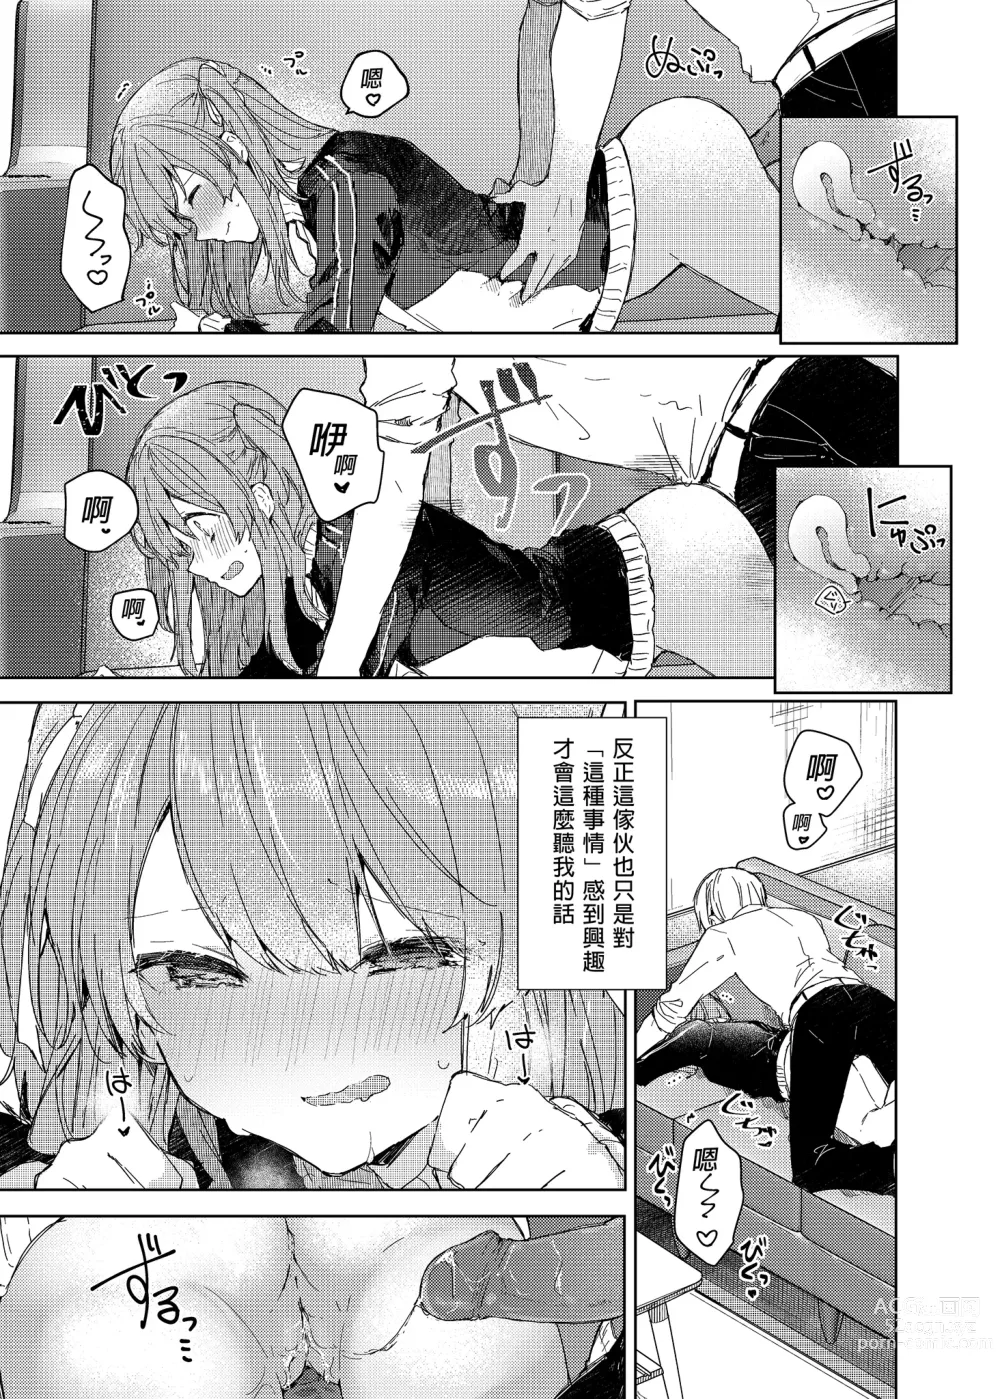 Page 41 of doujinshi 今天開始當個壞孩子。 (decensored)